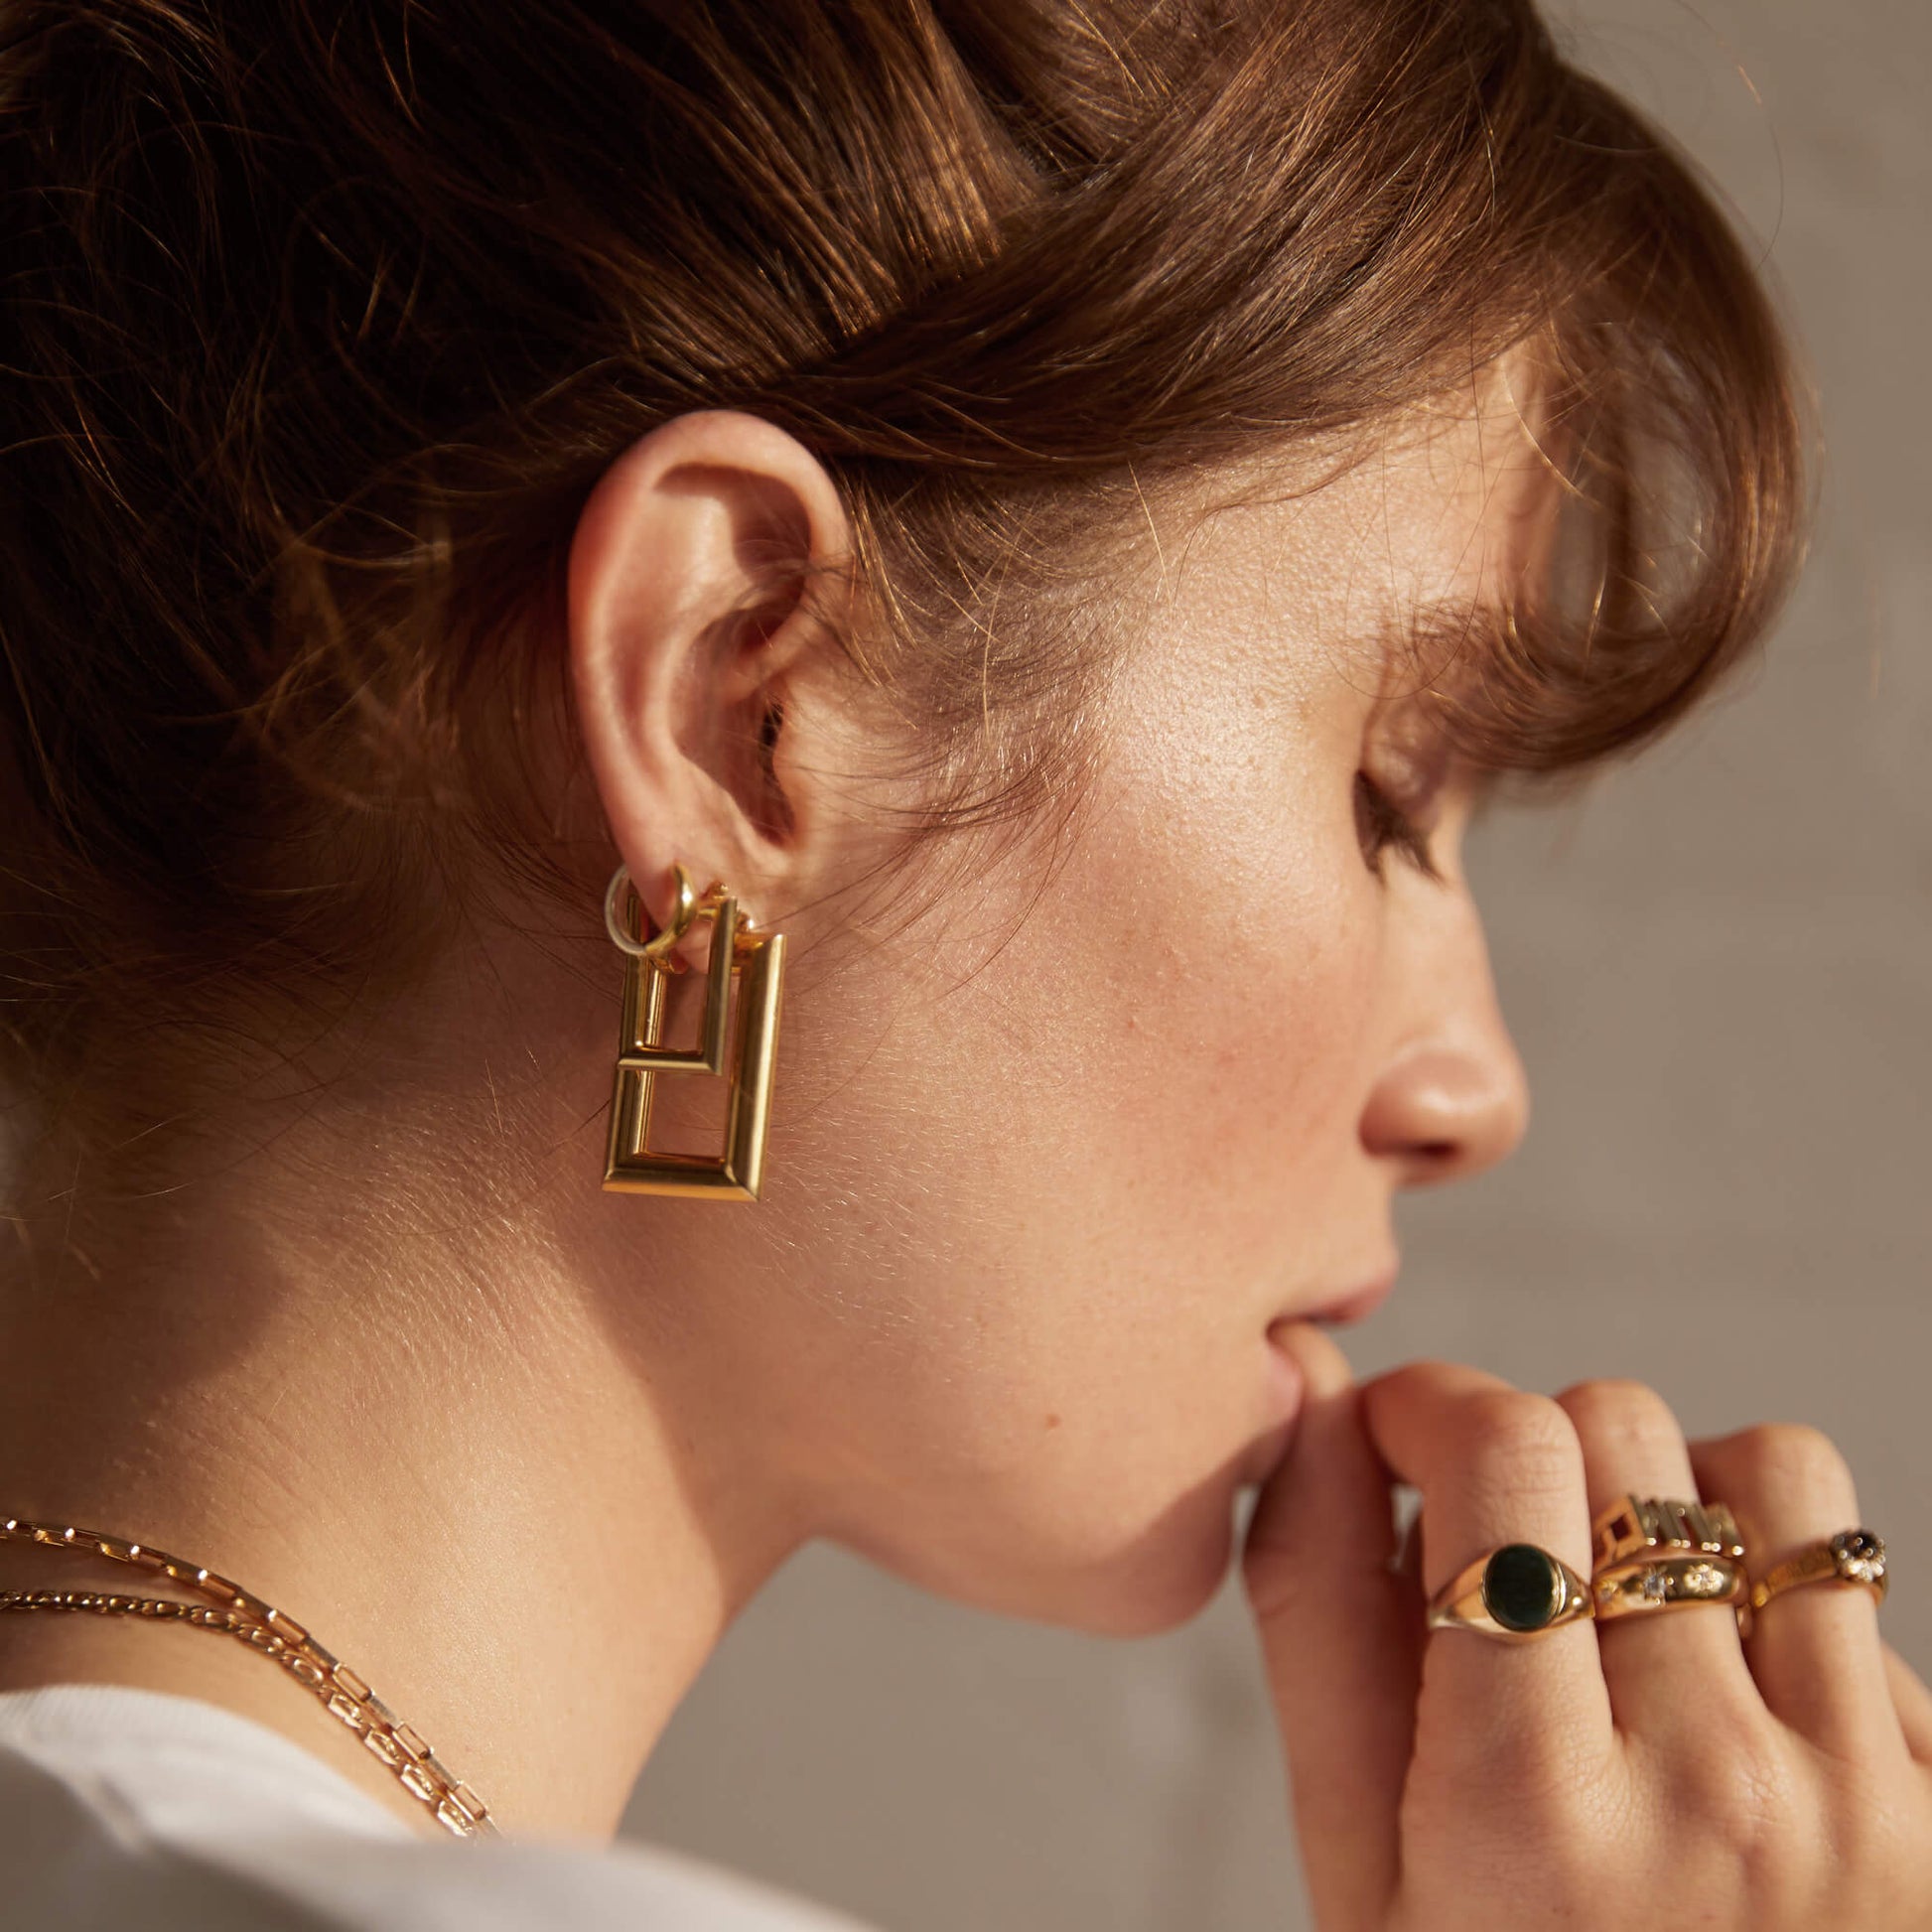 Ring design earrings - Gold